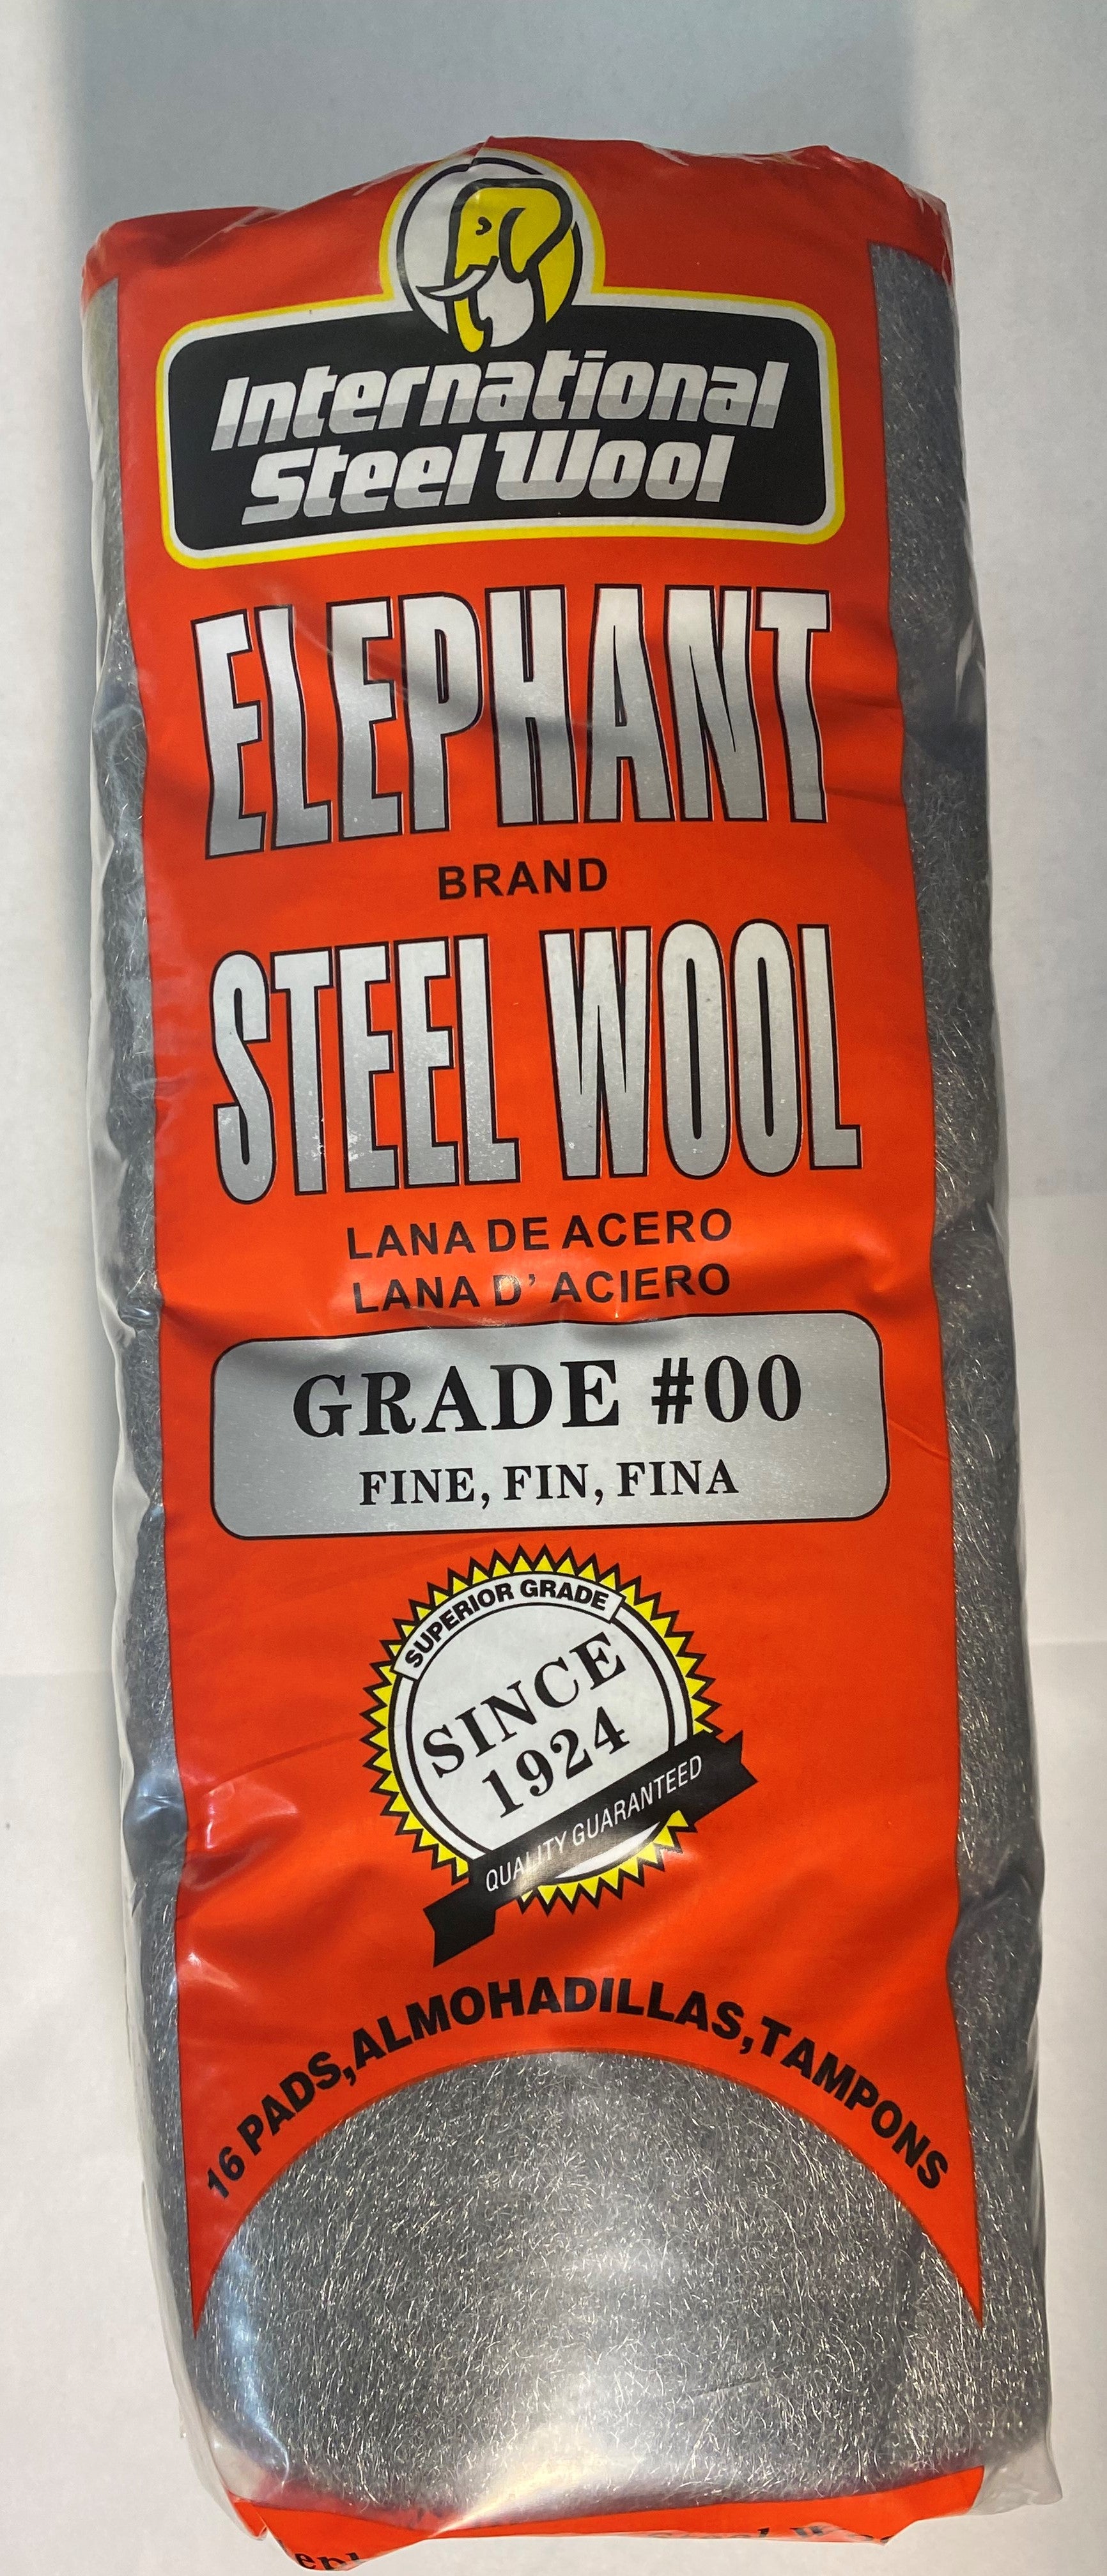 Elephant #00 Steel Wool pack of 16 Pads